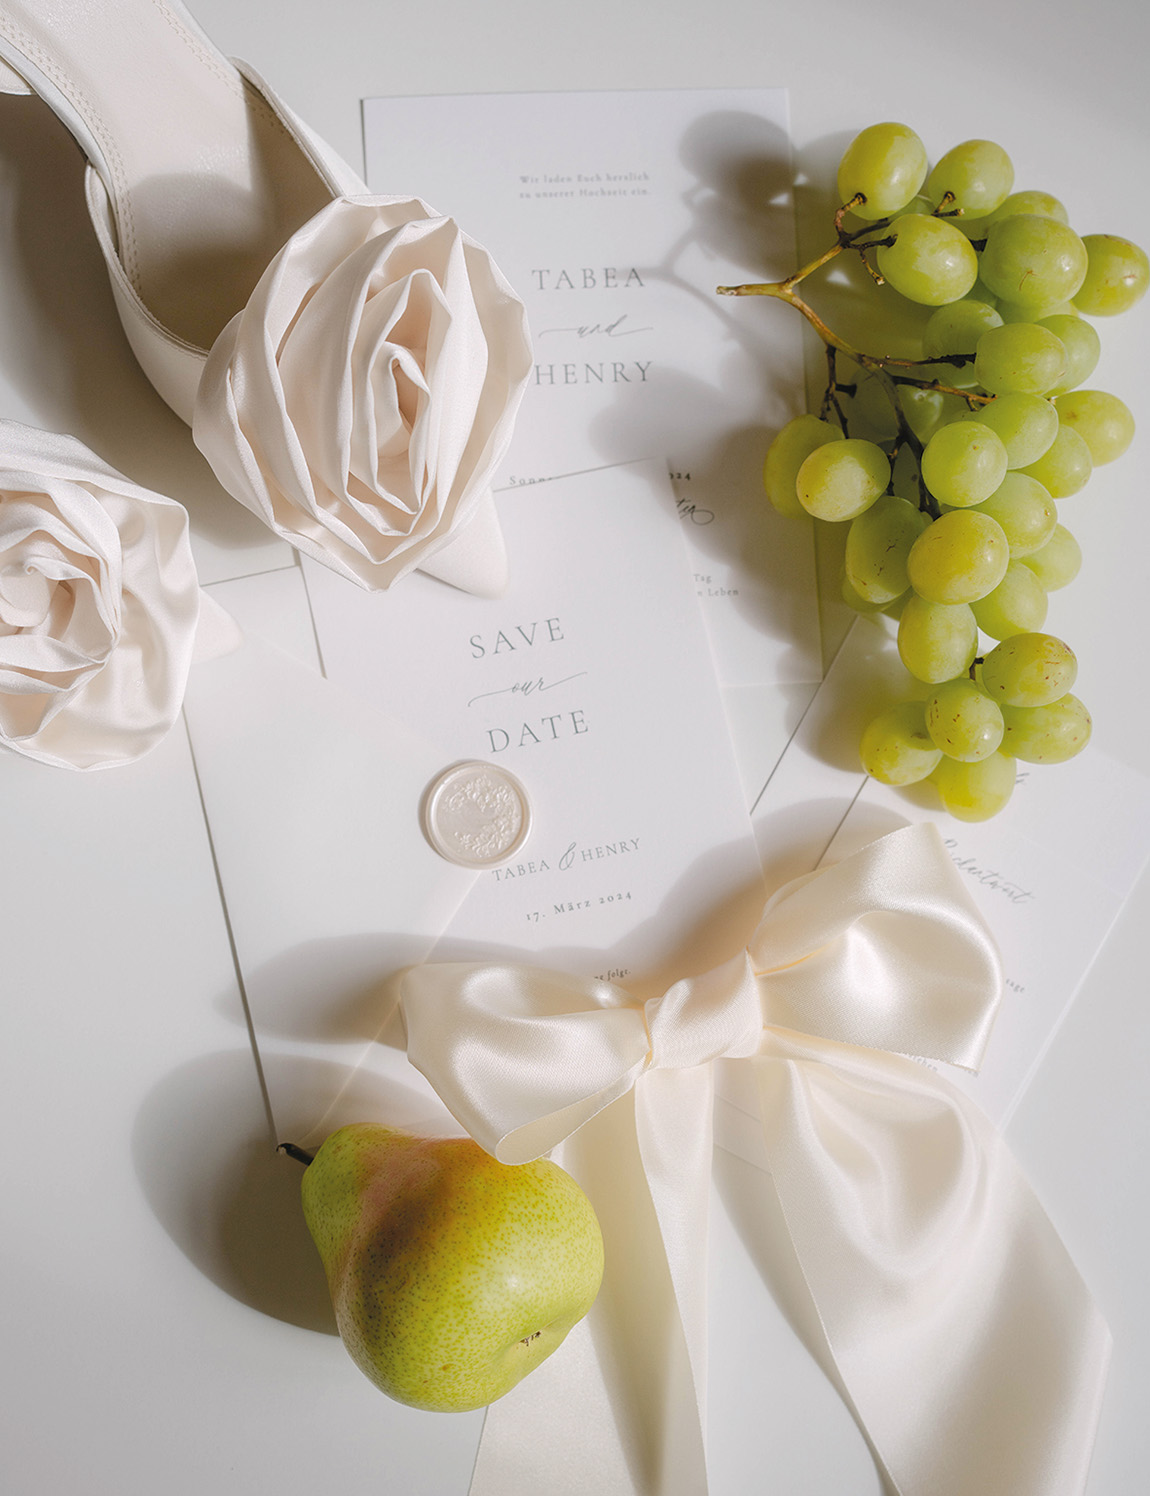 A paper romance: exquisite wedding stationary by PapierRomantik